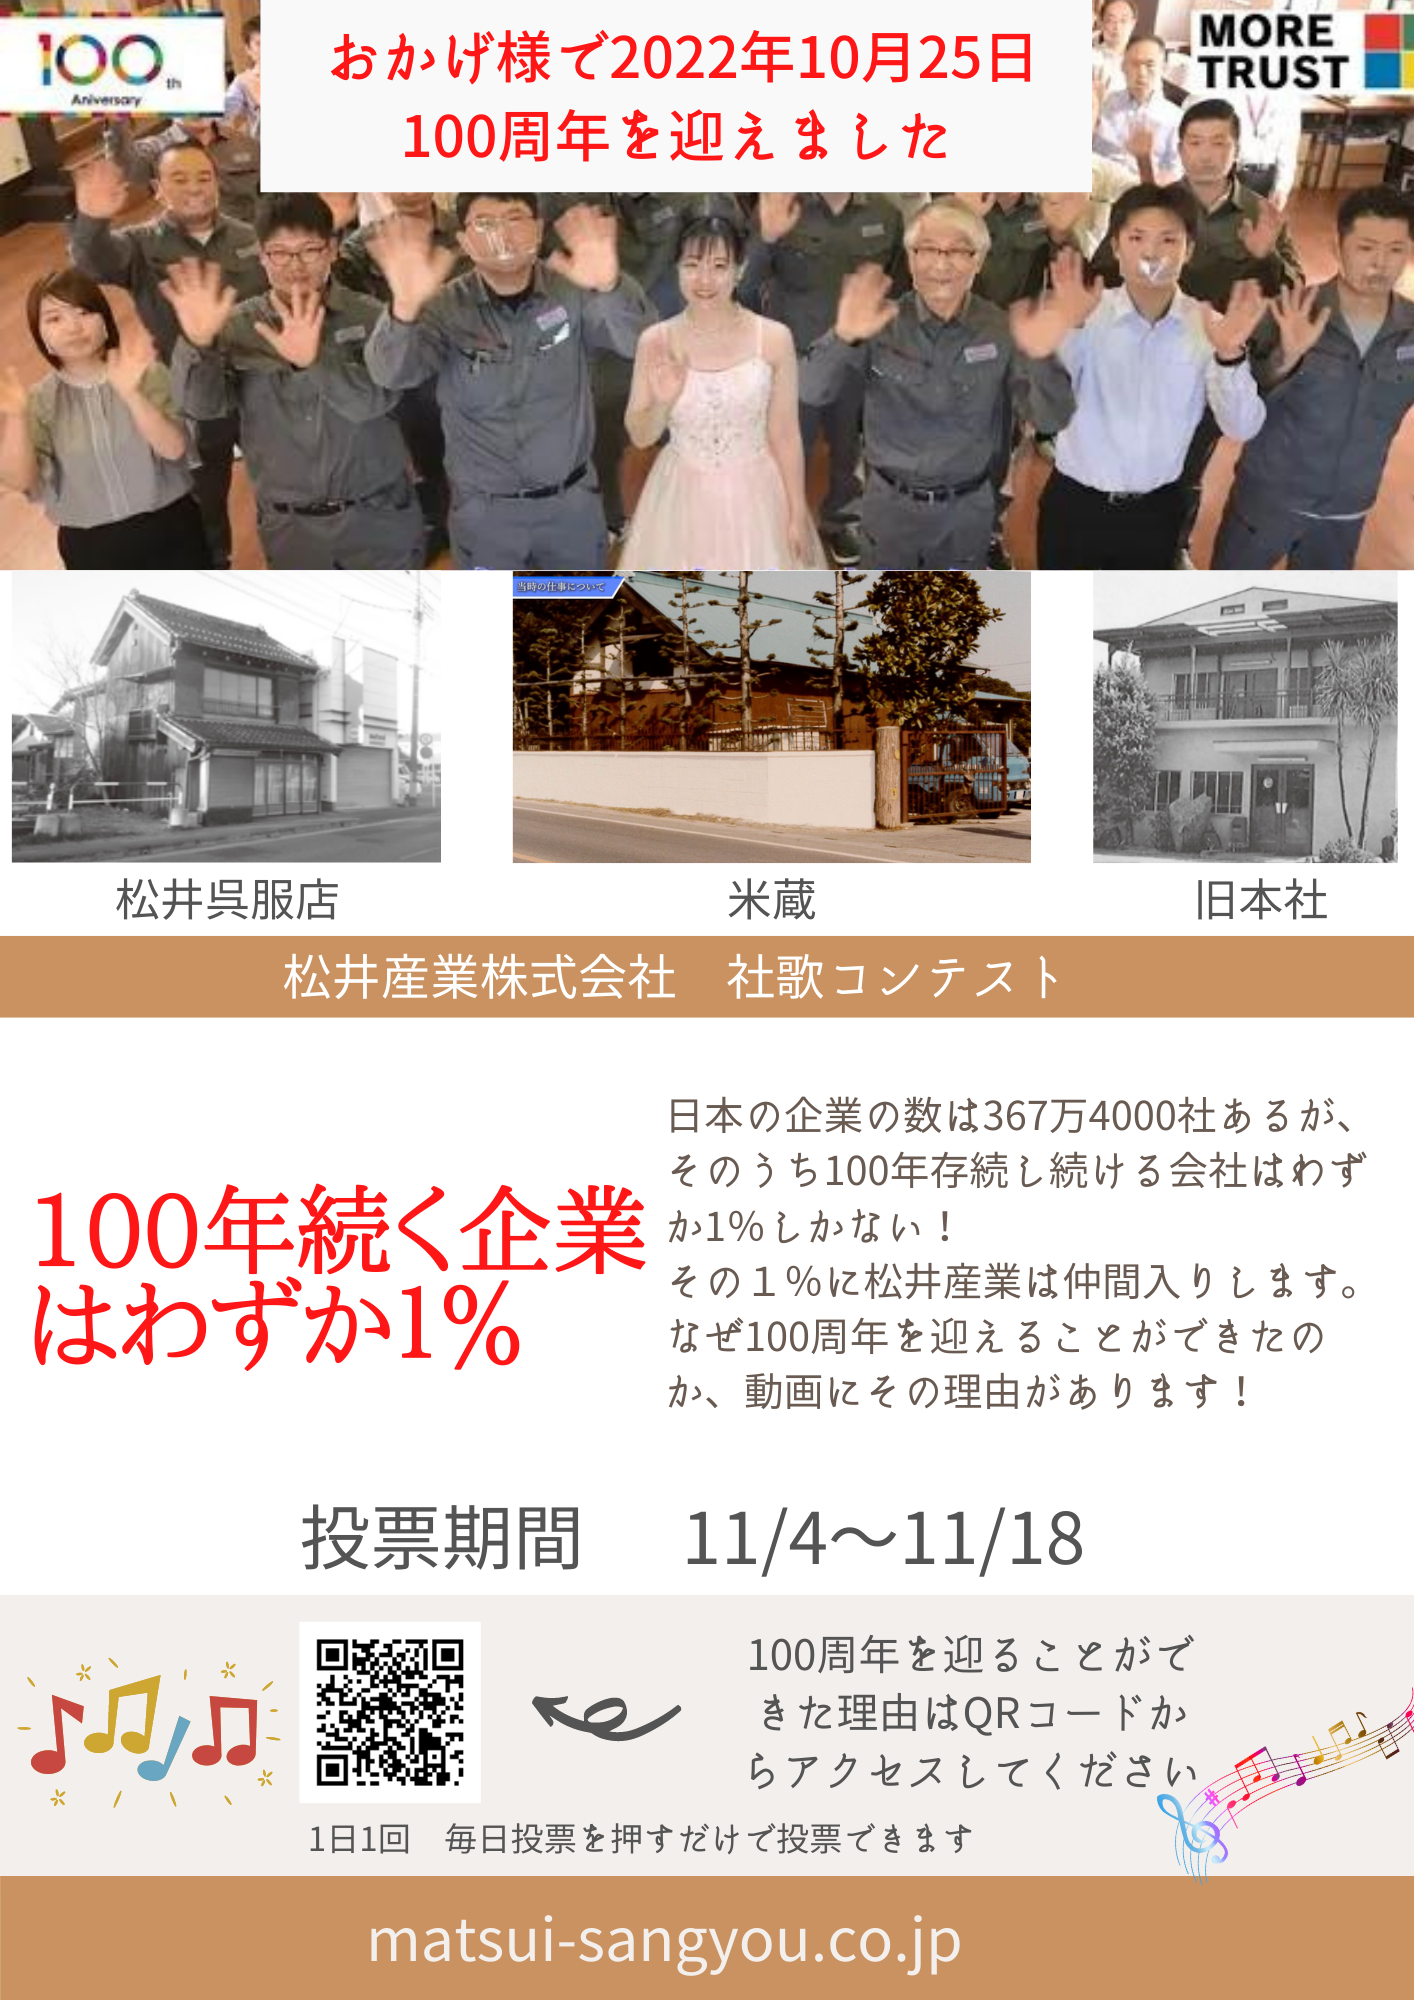 松井産業は創業100年を迎えました。今後ともよろしくお願いいたします。 画像